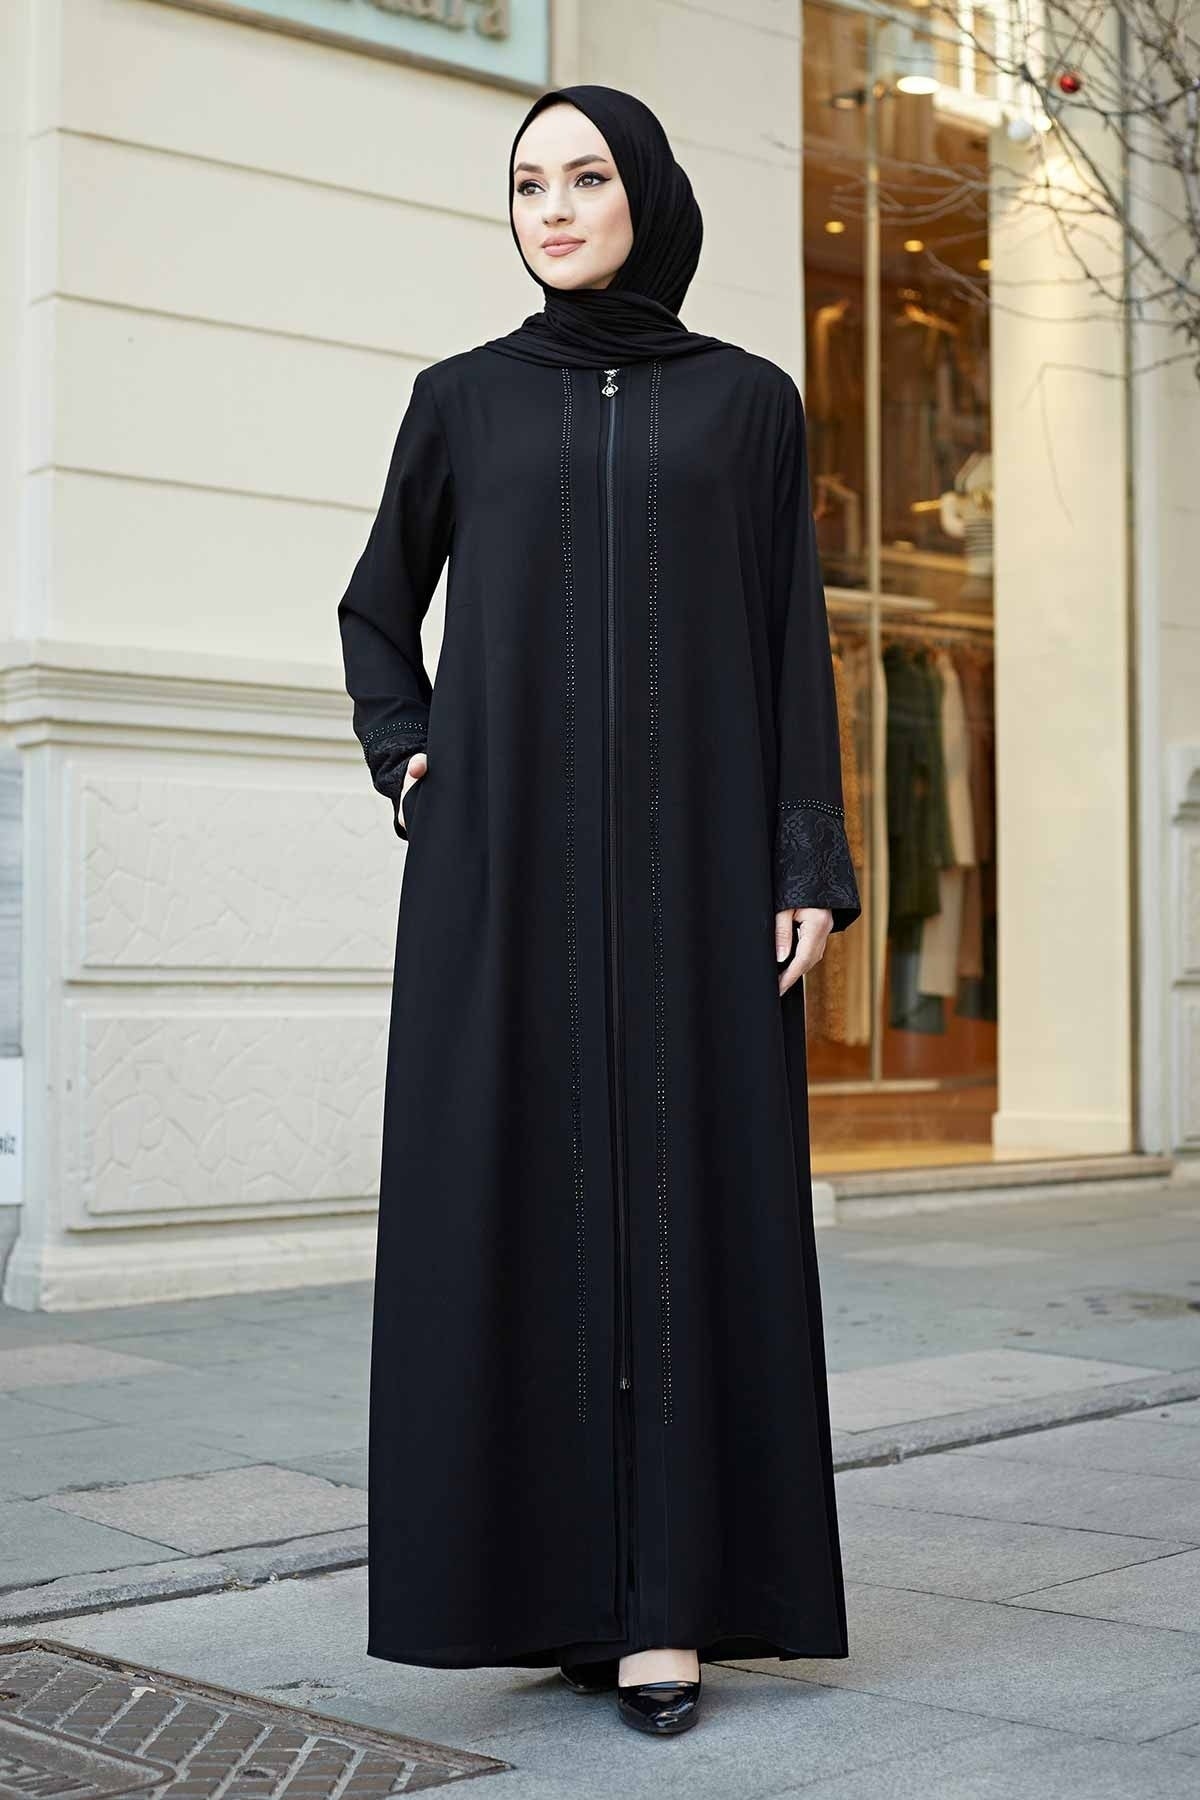 Istanbul styles Lace Applique Abaya & Embroidered Sleeves Abaya -  Fashionable Women's Abaya - Islamic Fashion – ISTANBUL STYLES